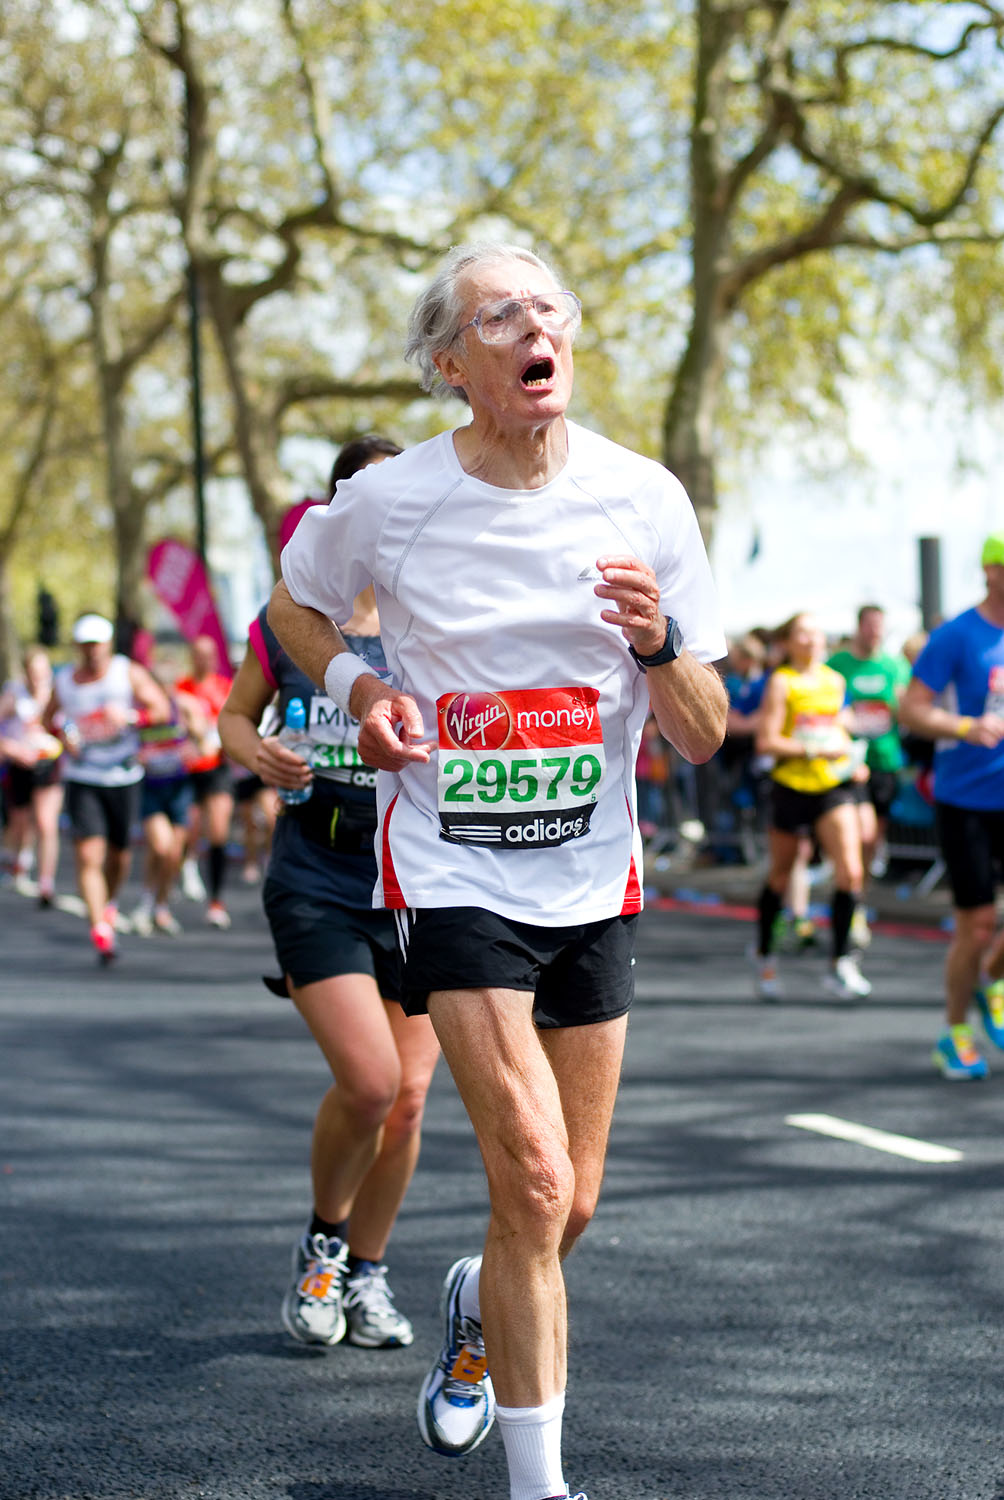  London Marathon 2012 - Mile 24.5 